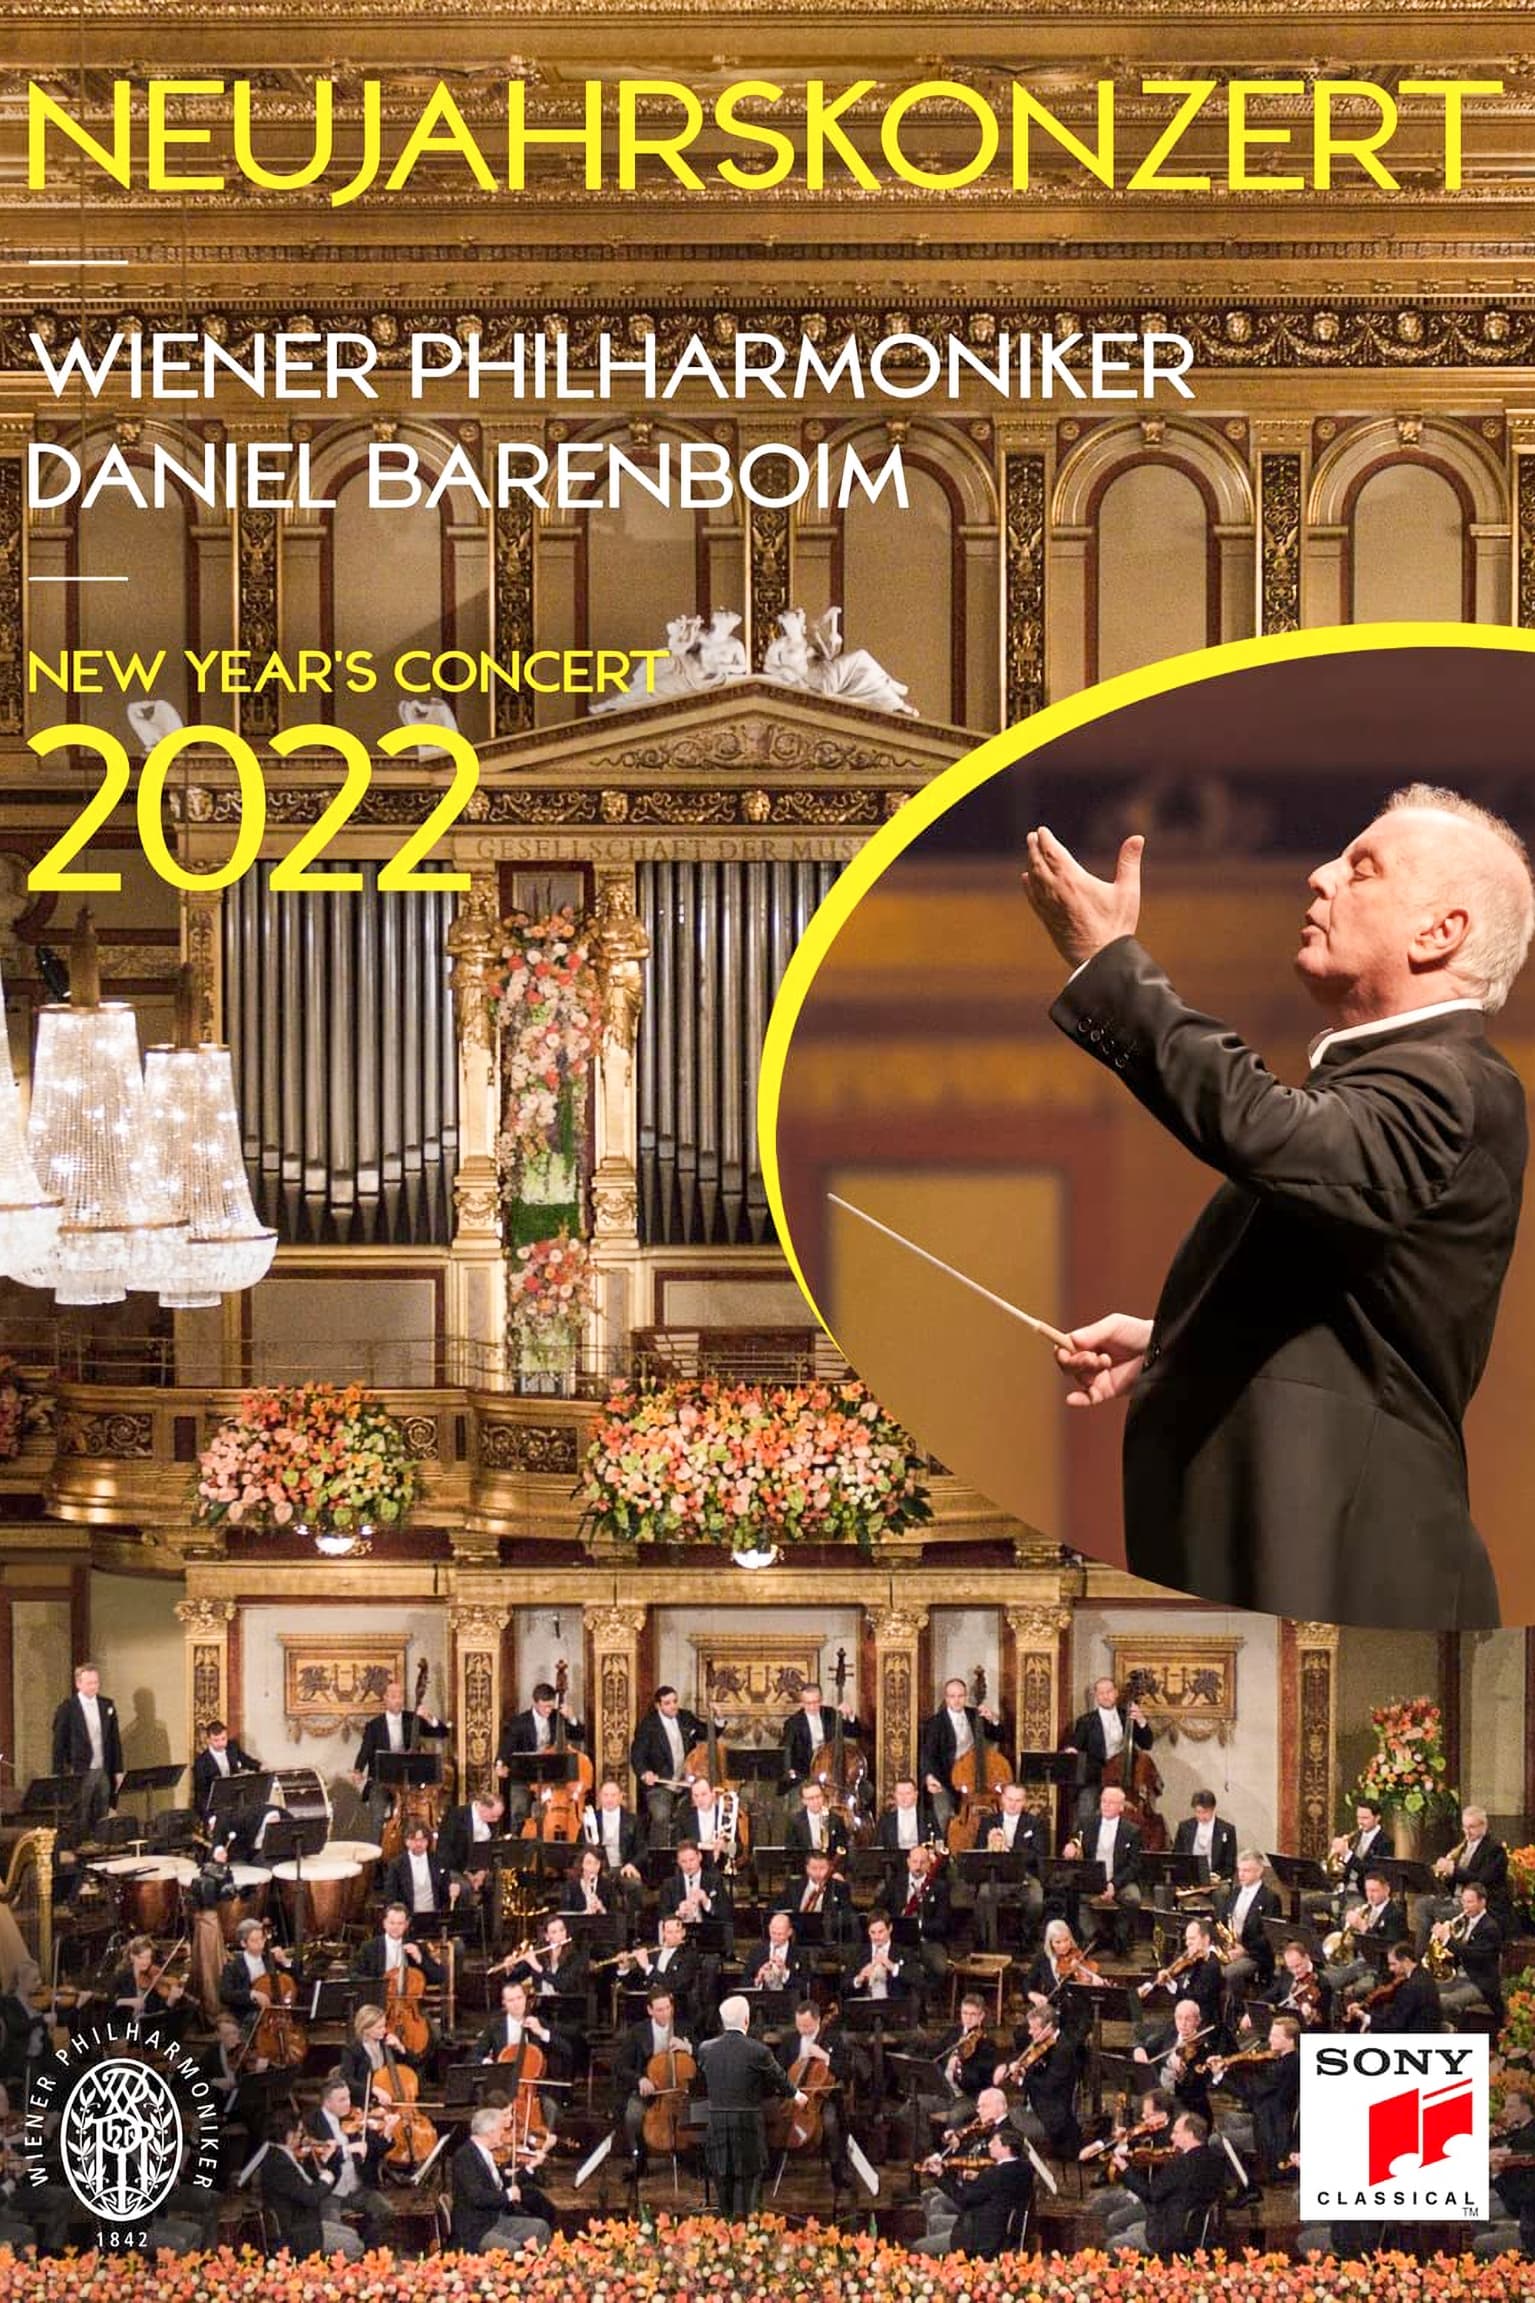 Neujahrskonzert der Wiener Philharmoniker 2022